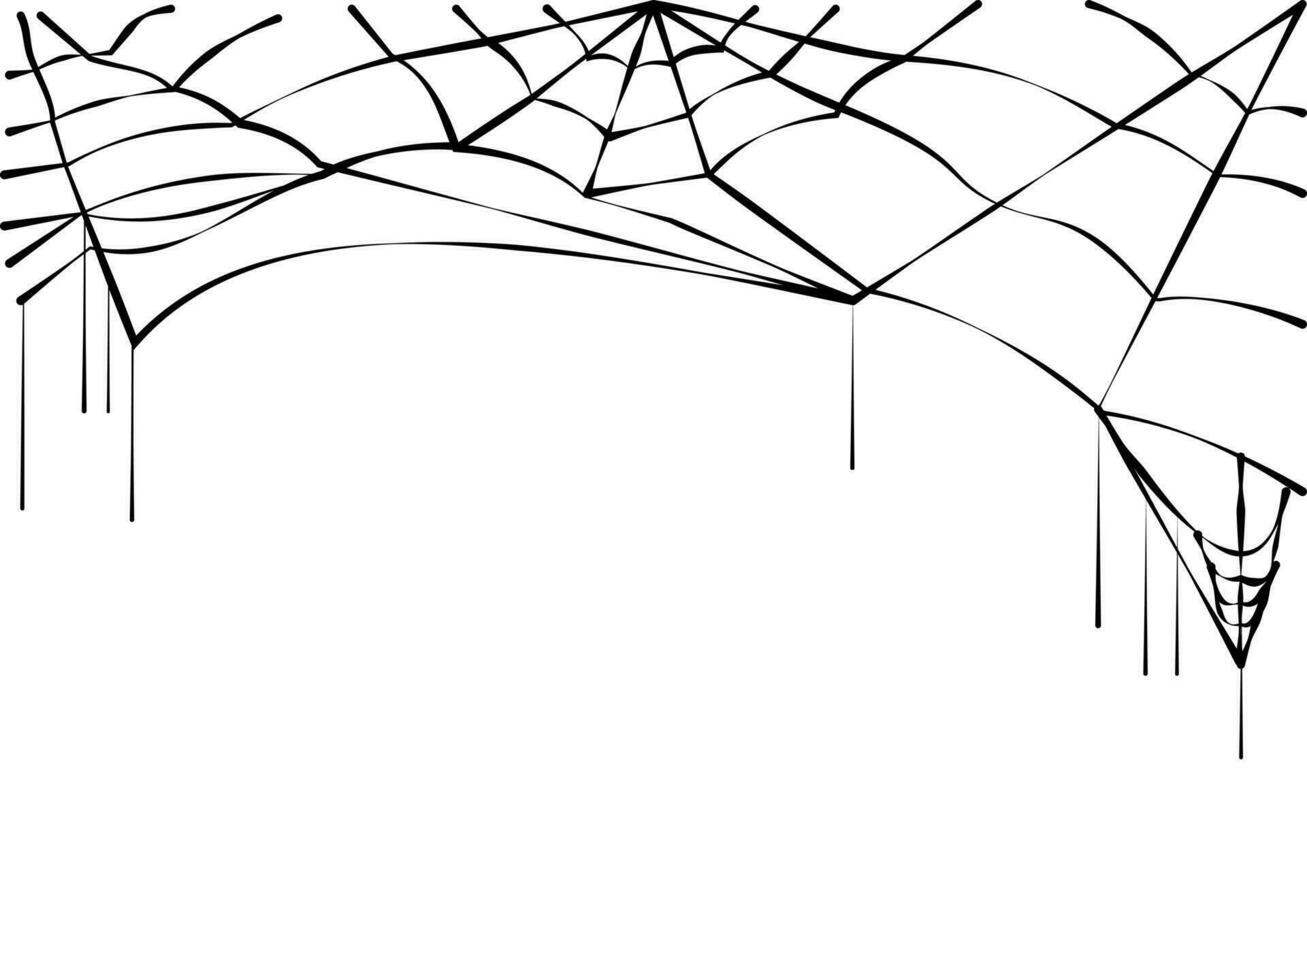 Preto aranha rede. assustador teia de aranha do dia das Bruxas símbolo. isolado em branco fundo. vetor ilustração